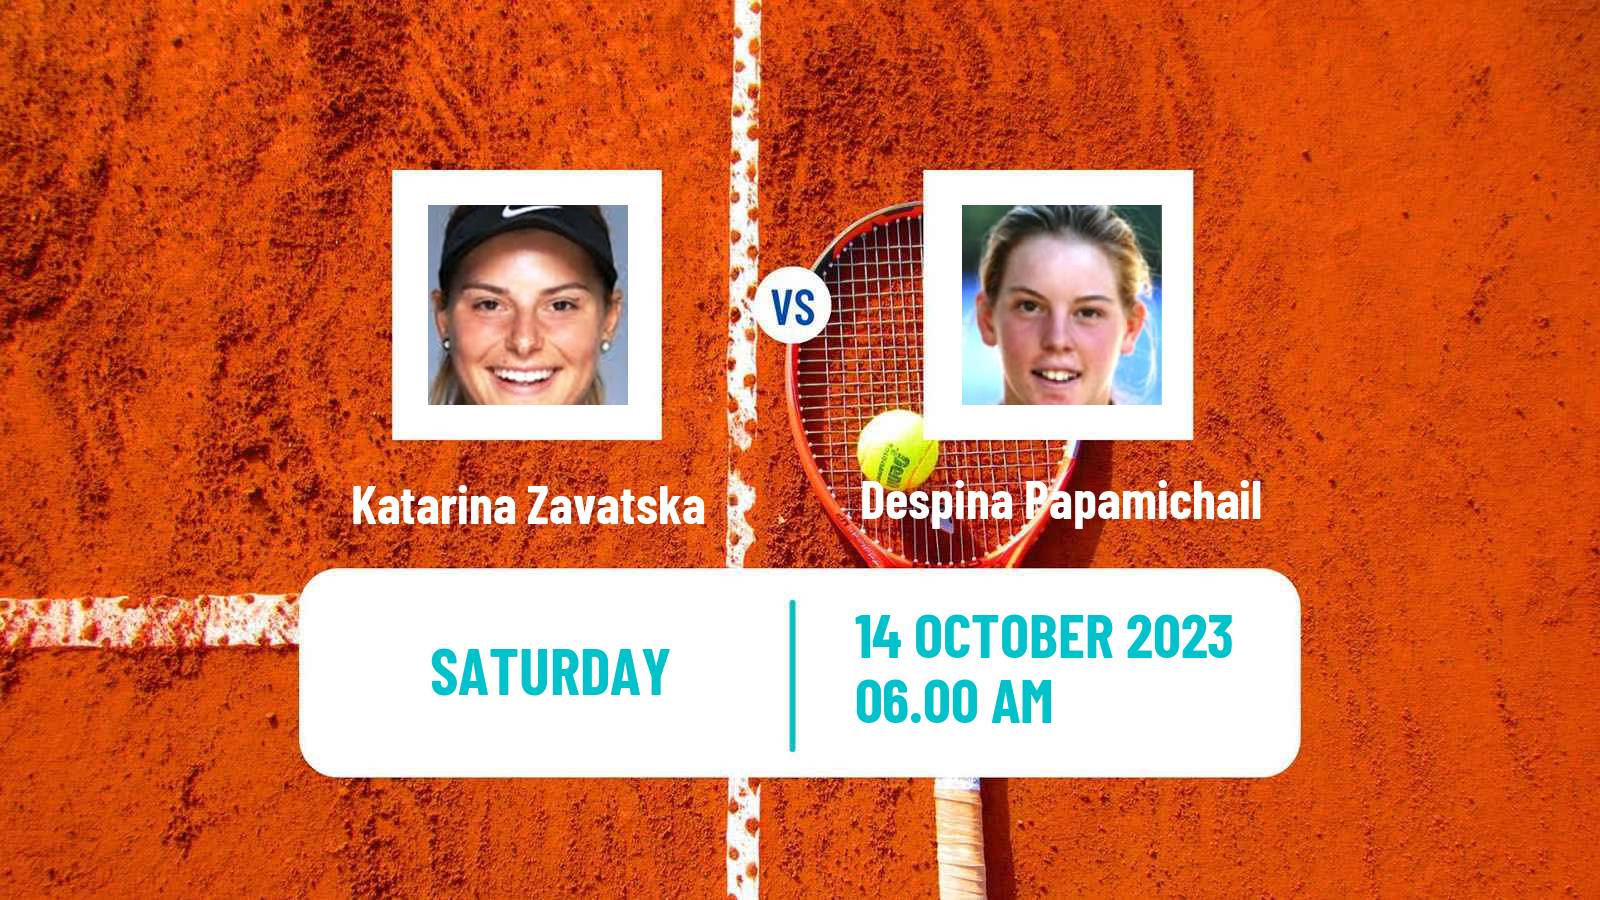 Tennis WTA Monastir Katarina Zavatska - Despina Papamichail